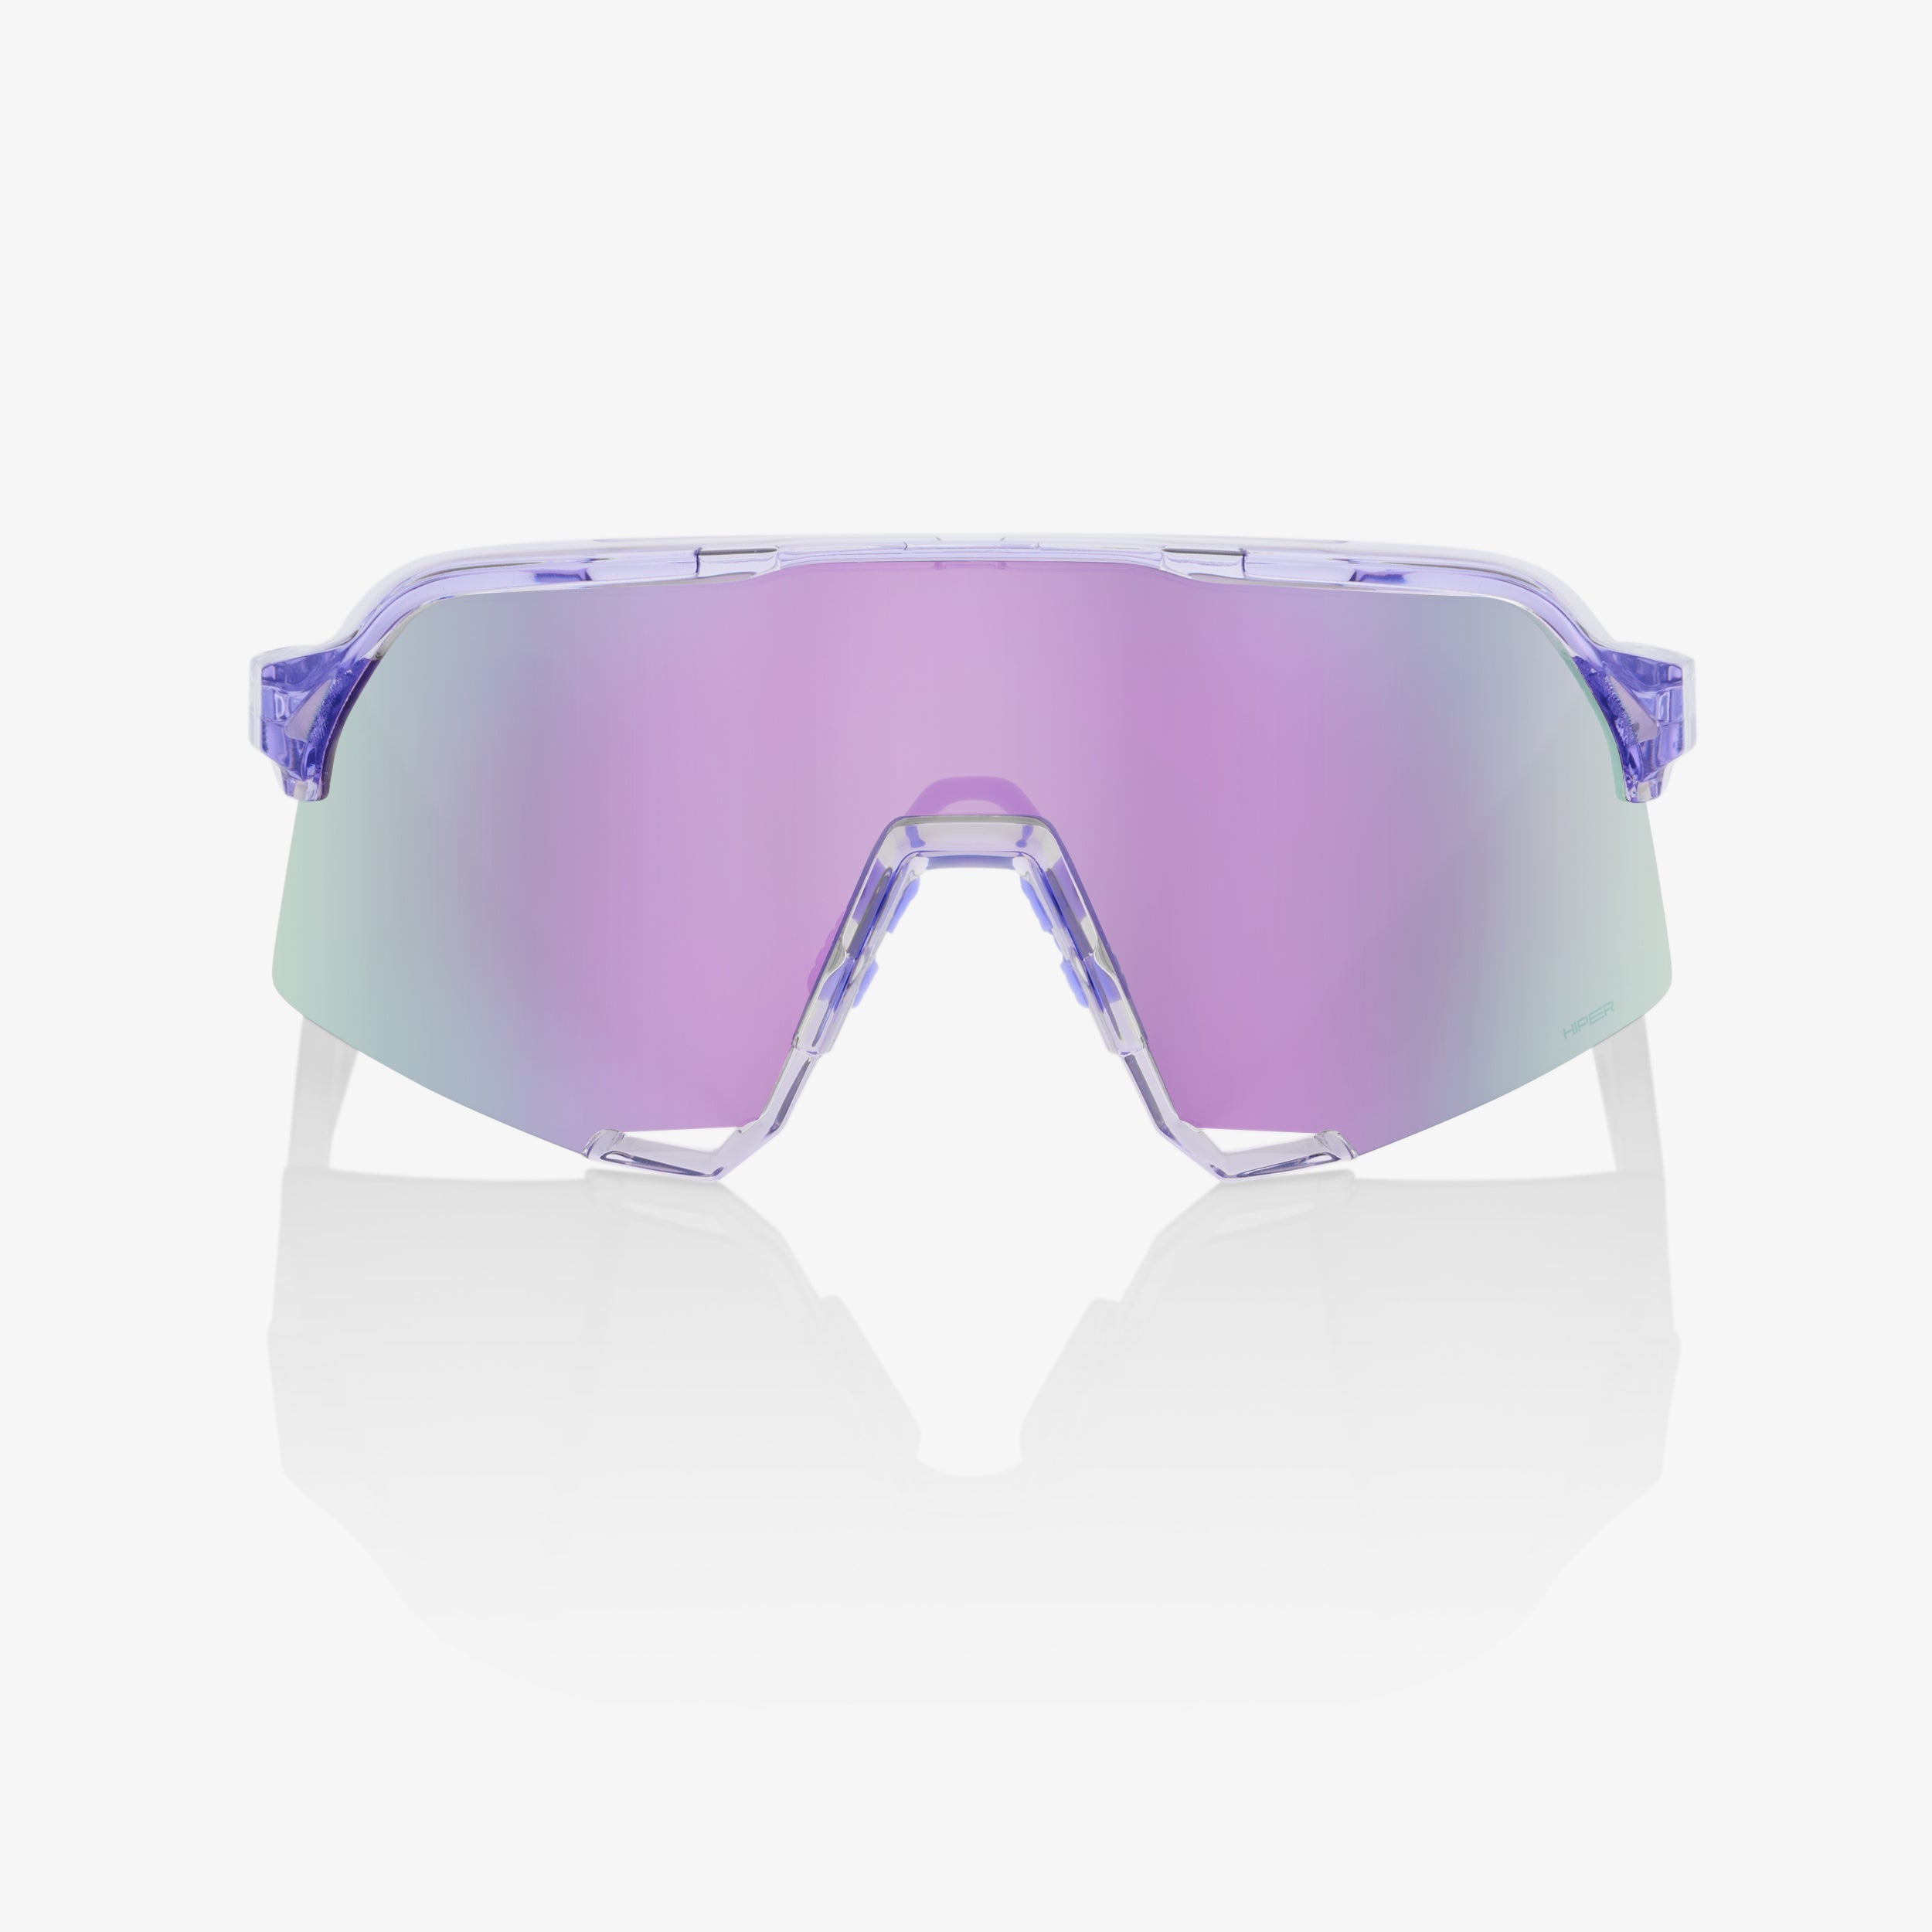 S3 - Polished Translucent Lavender - HiPER® Lavender Mirror Lens - Secondary